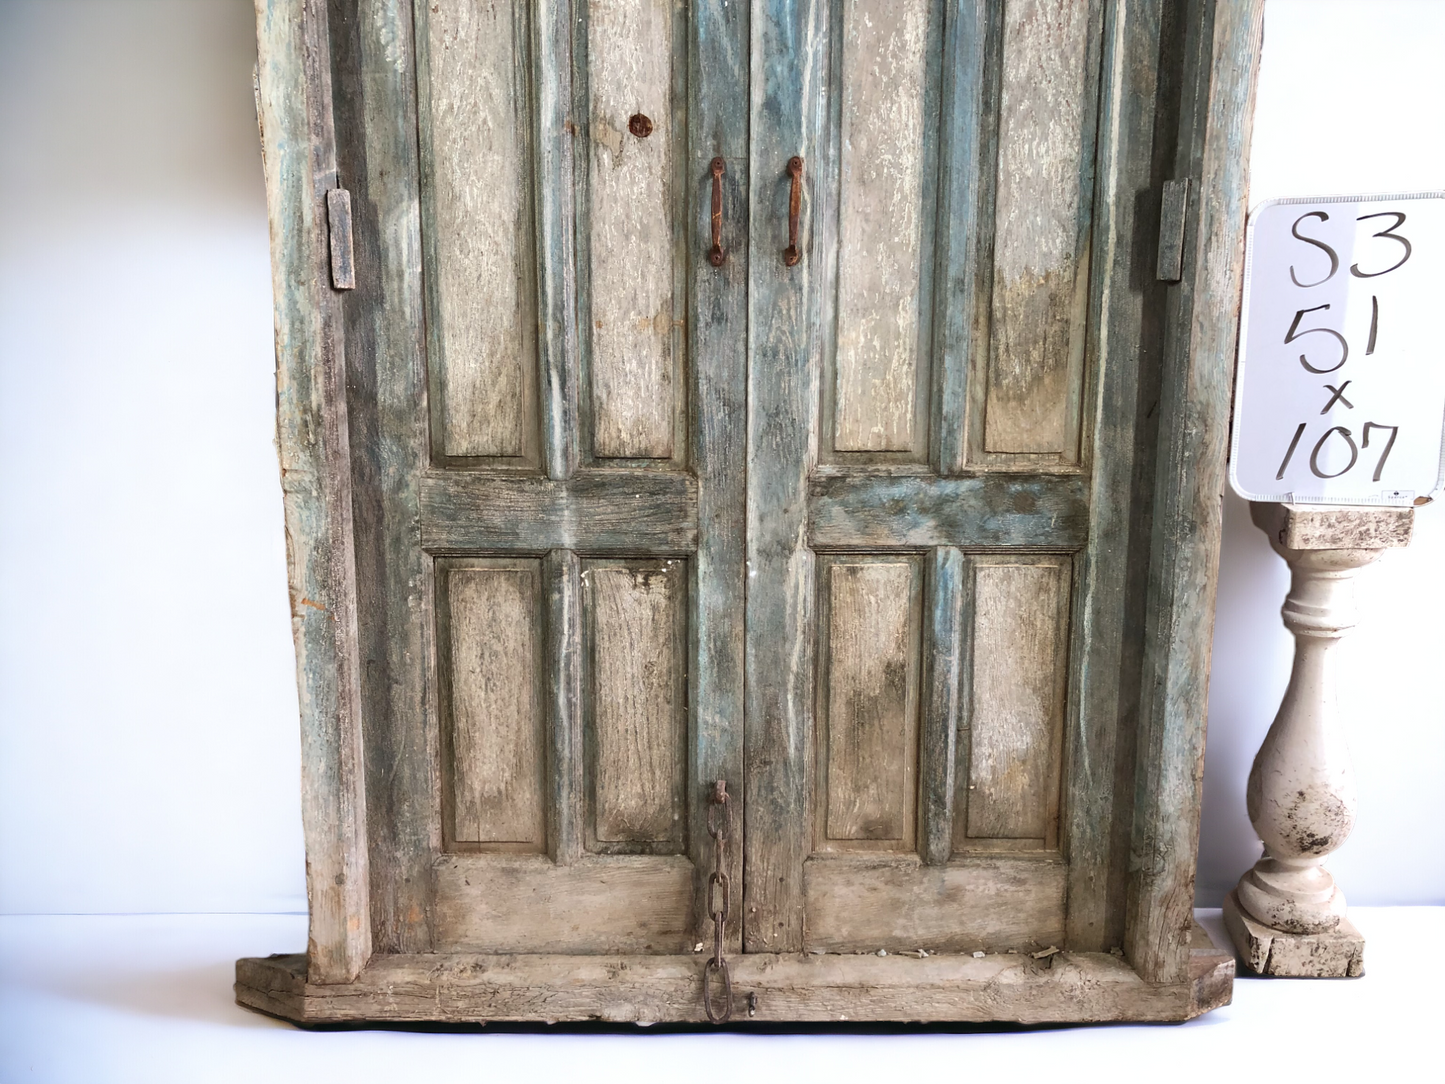 Antique Arched French Double Doors (51x107) Encased Doors, European Doors Jamb S3